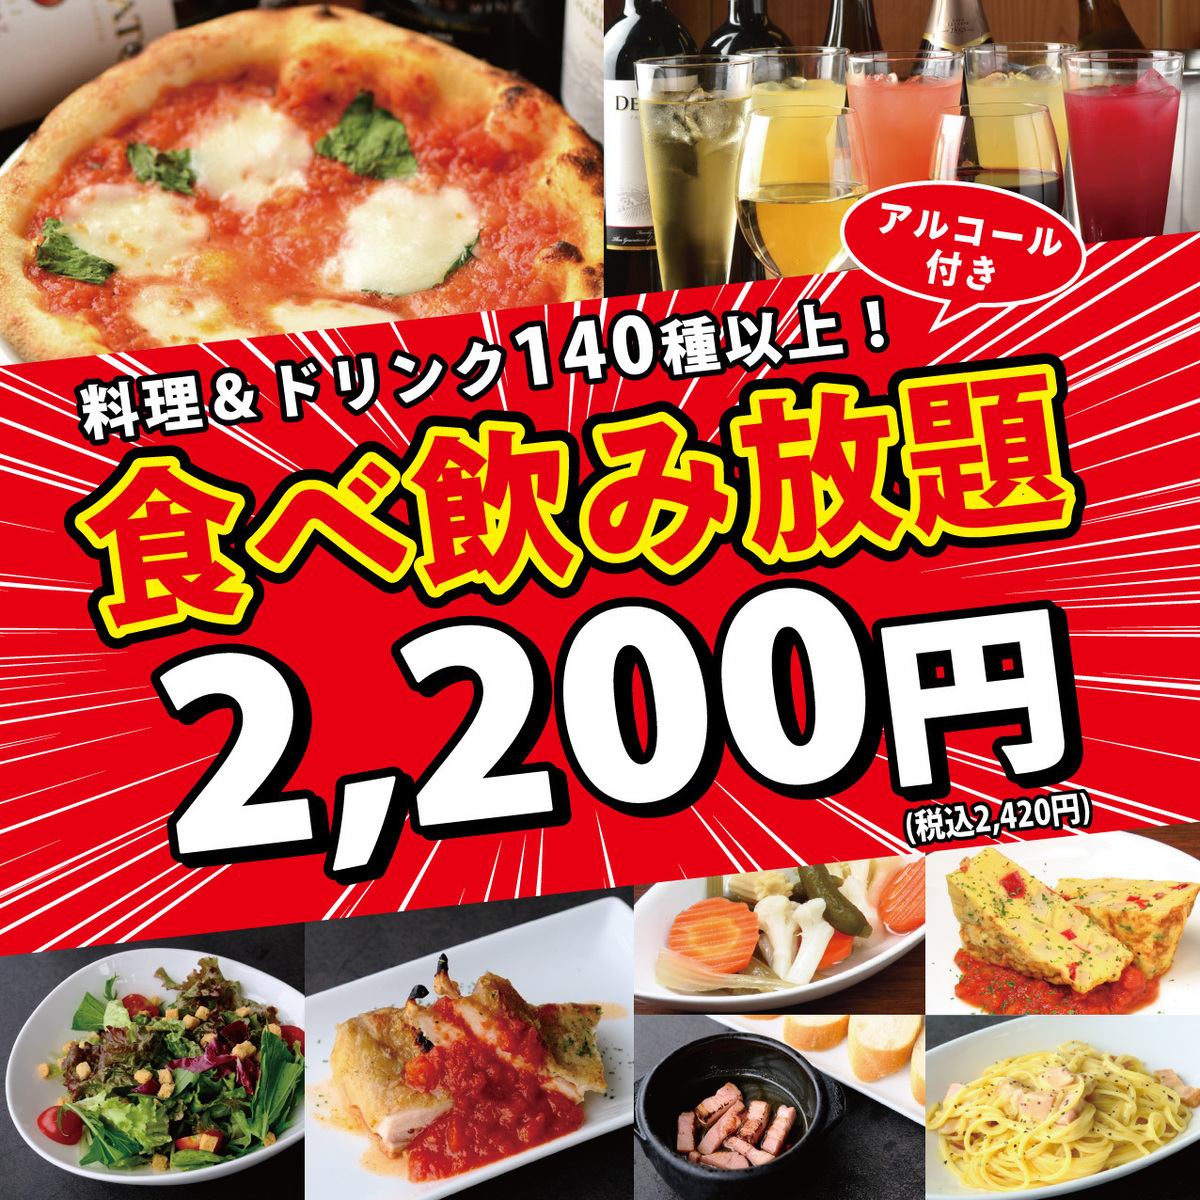 從榮站1號出口步行30秒！吃喝無限2,420日元♪